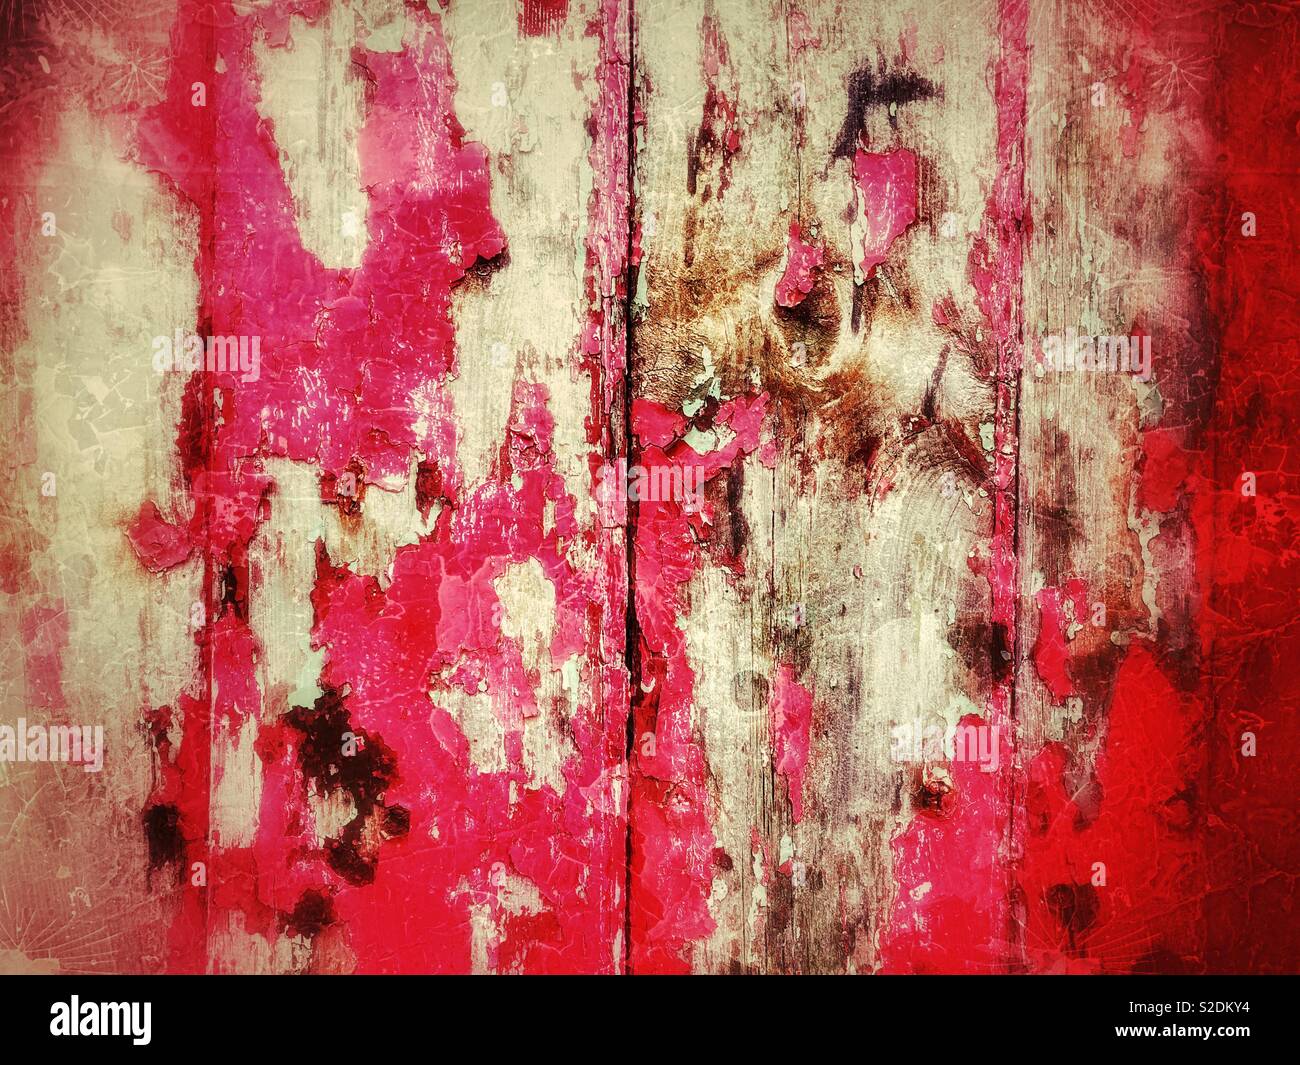 Peeling décolorées de la peinture rouge sur une vieille porte en bois. Banque D'Images